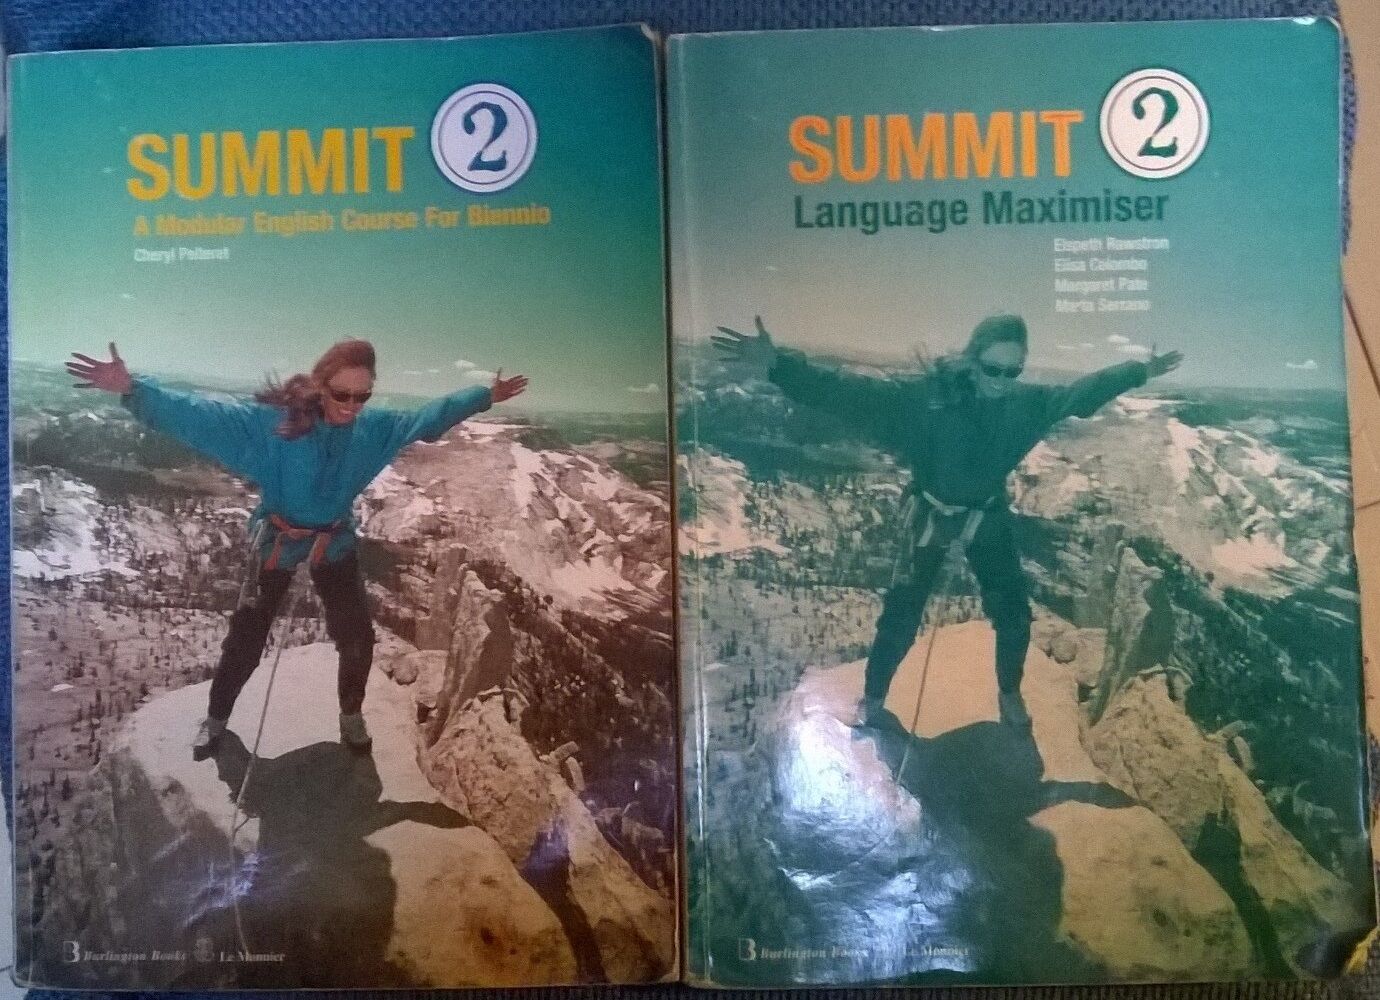  Summit 2 For Biennio + Language Maximiser - Pelteret - Le Monnier, 2002 - L